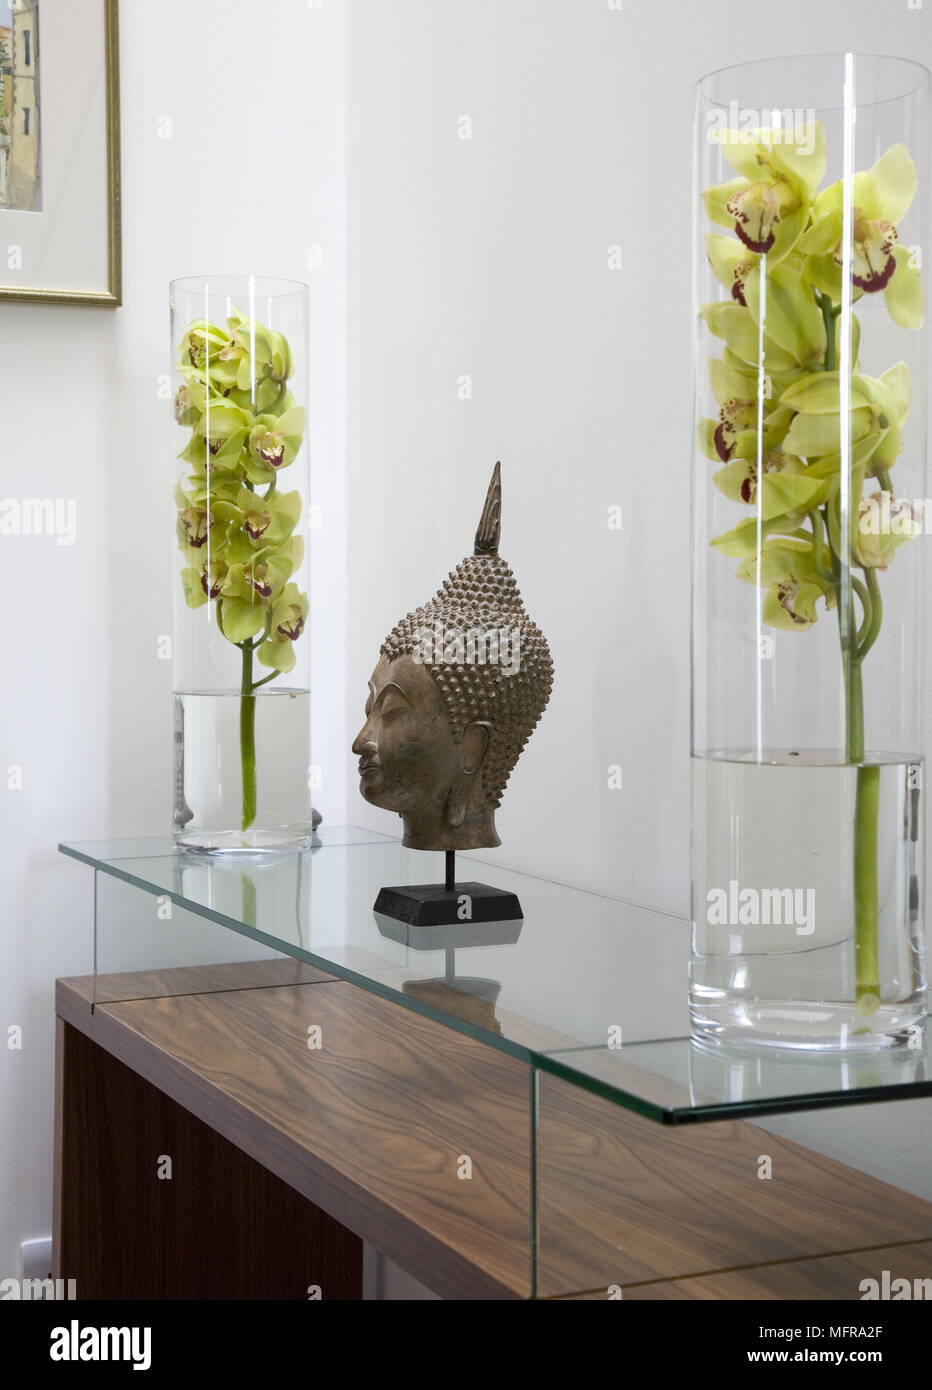 Paar Blumenarrangements in Glasvasen entweder Seite des Buddha Kopf  Abbildung auf Glas überstieg Beistelltisch Stockfotografie - Alamy